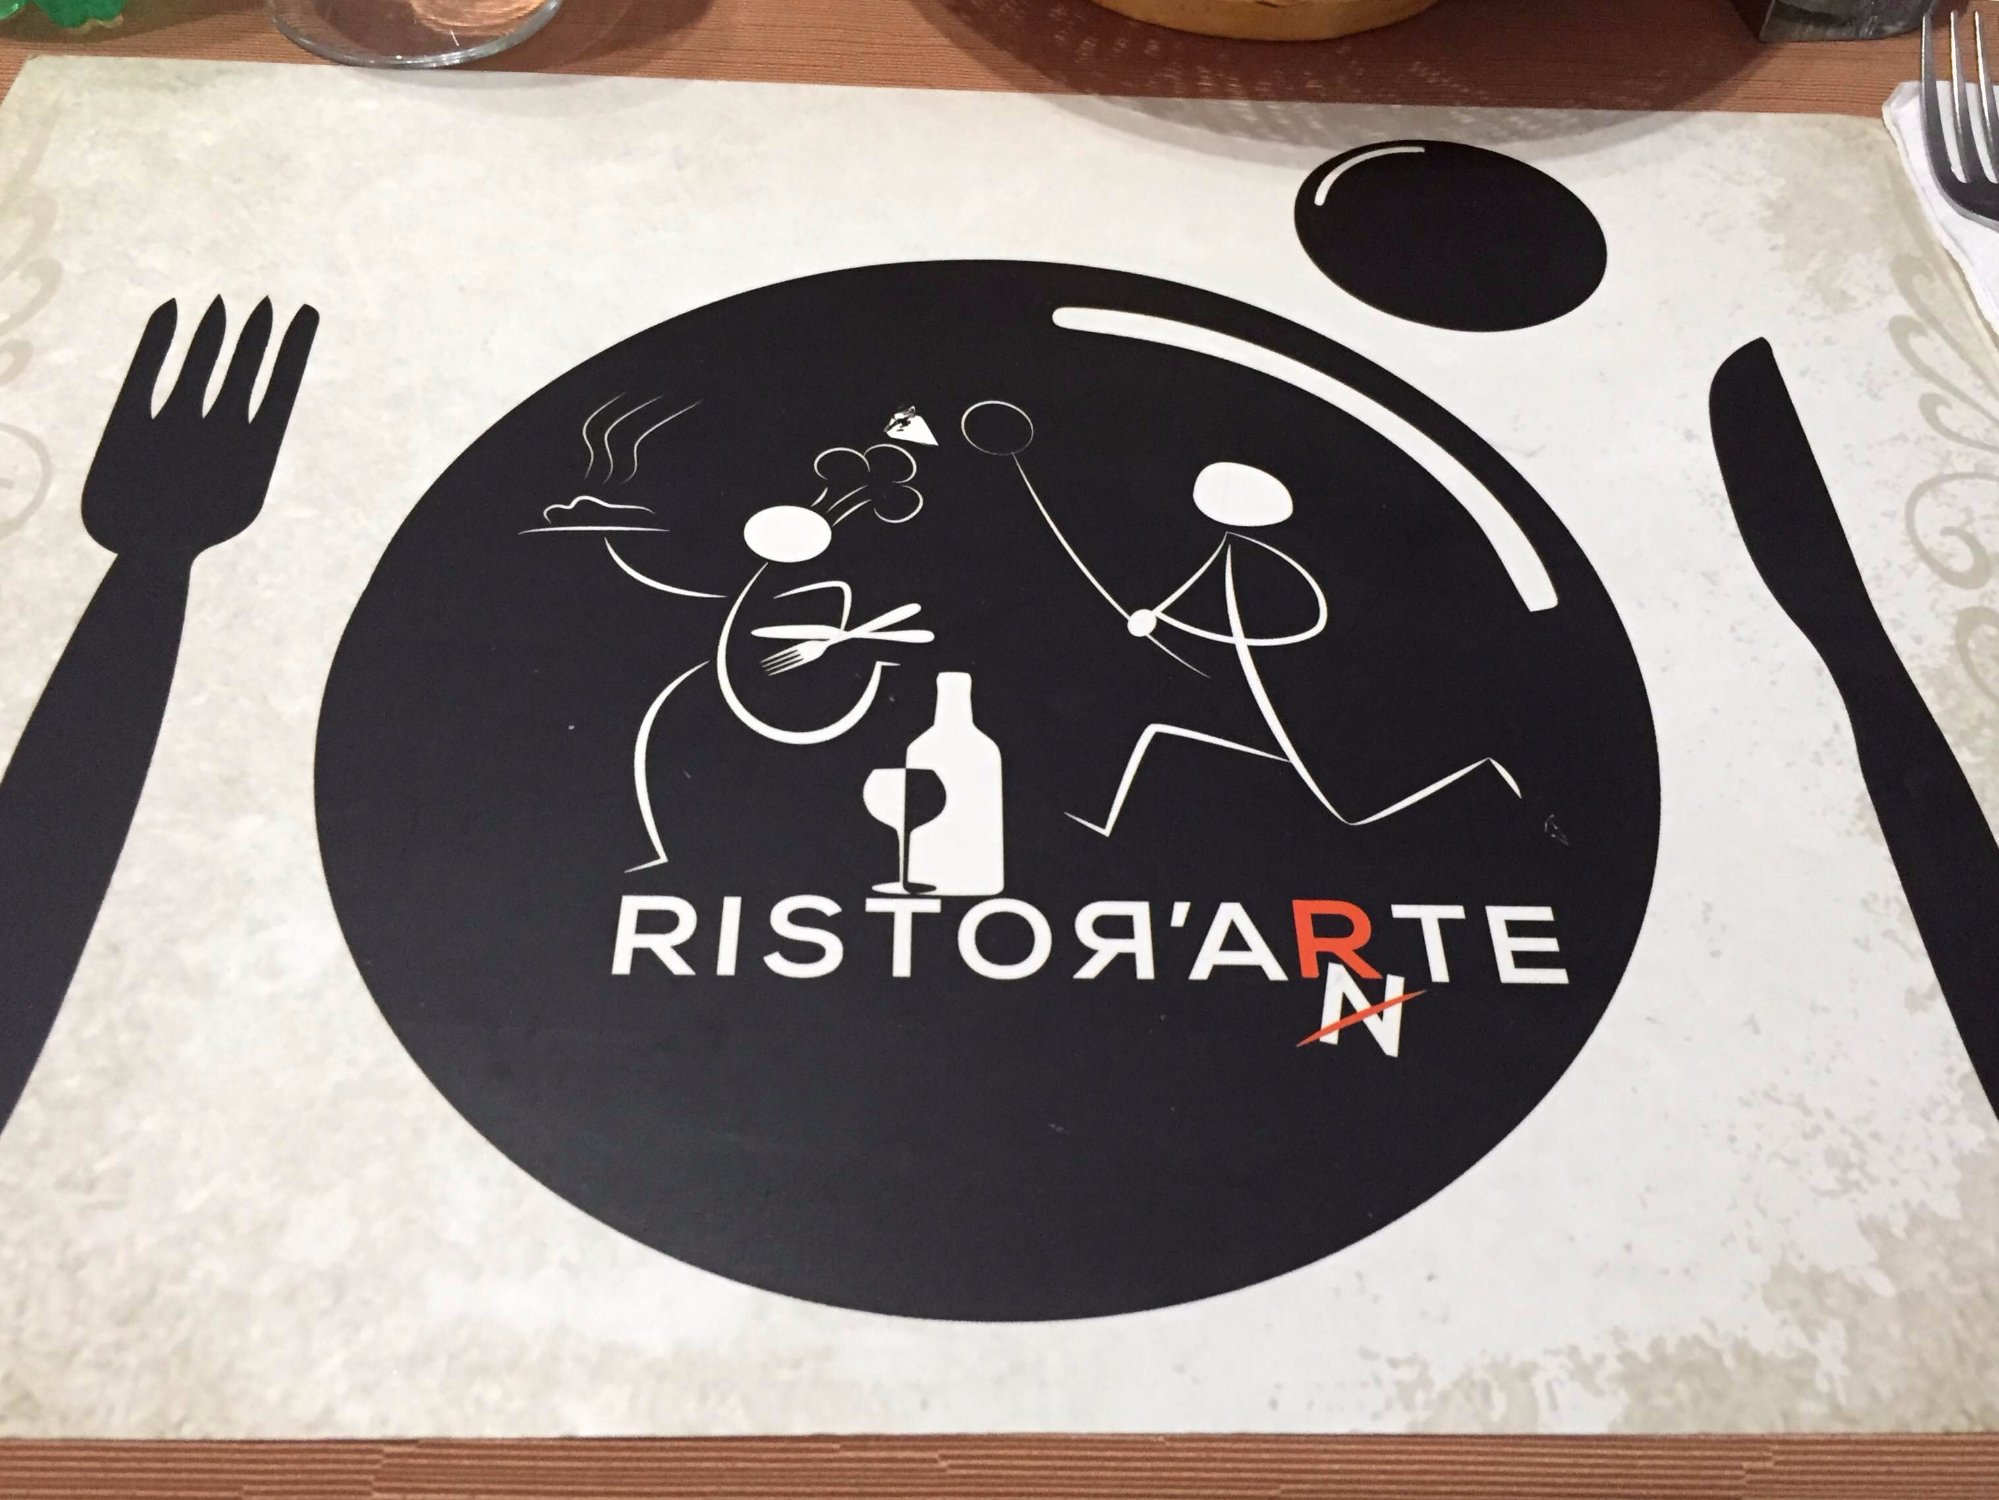 Ristor'arte, Albonese